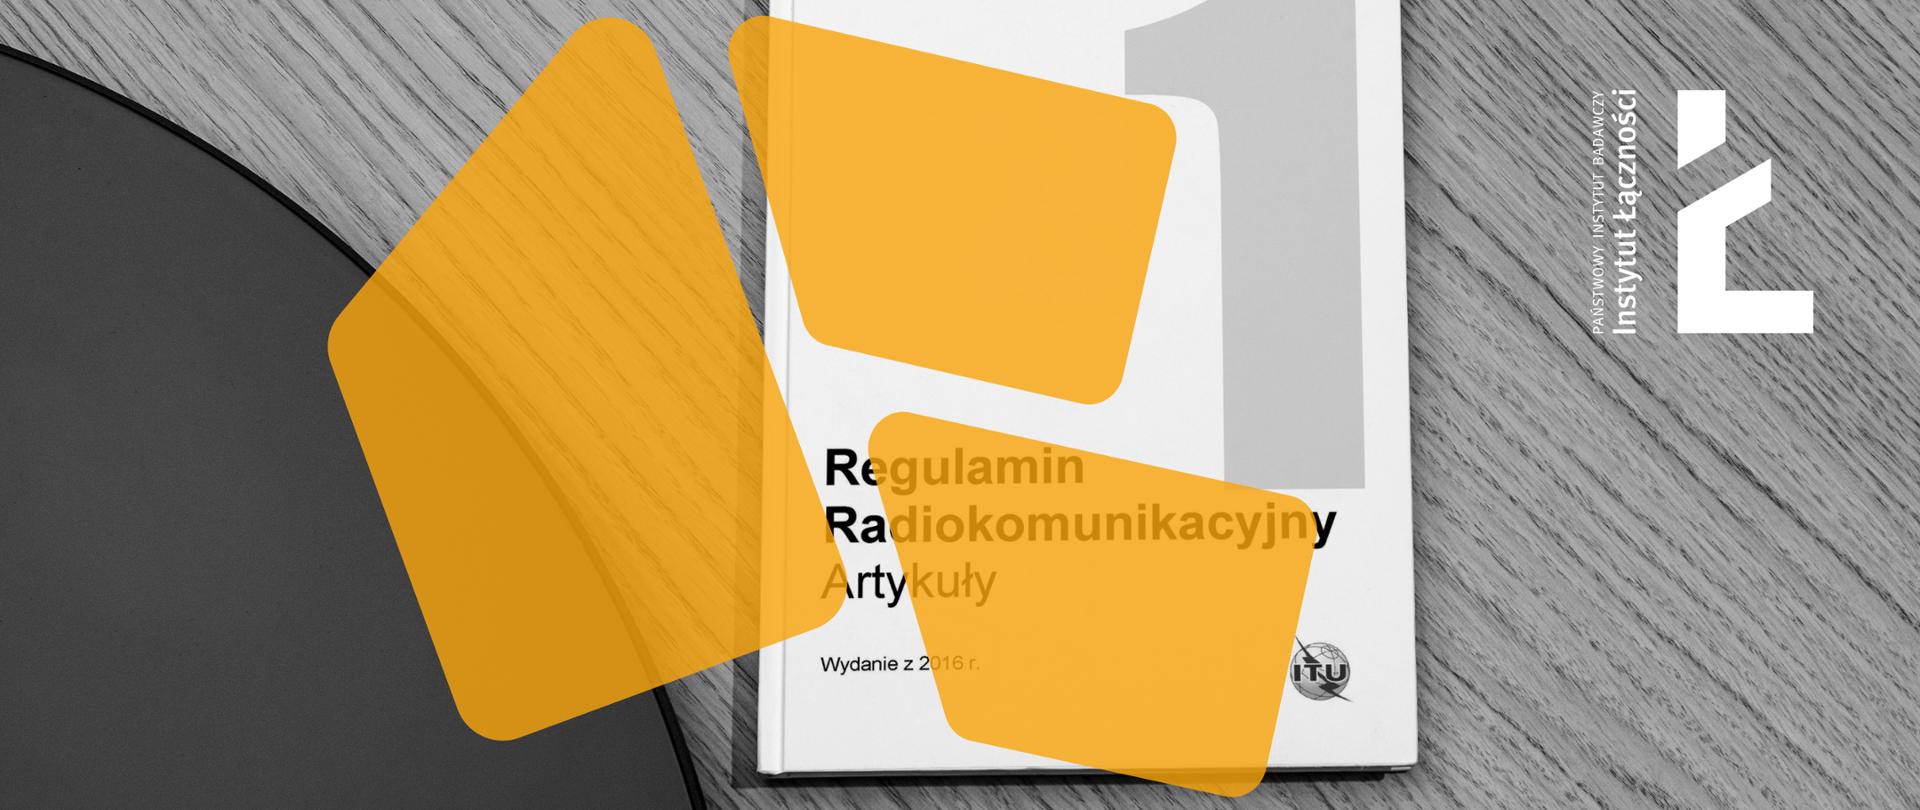 Okładka pierwszego tomu Regulaminu Radiokomunikacyjnego ITU